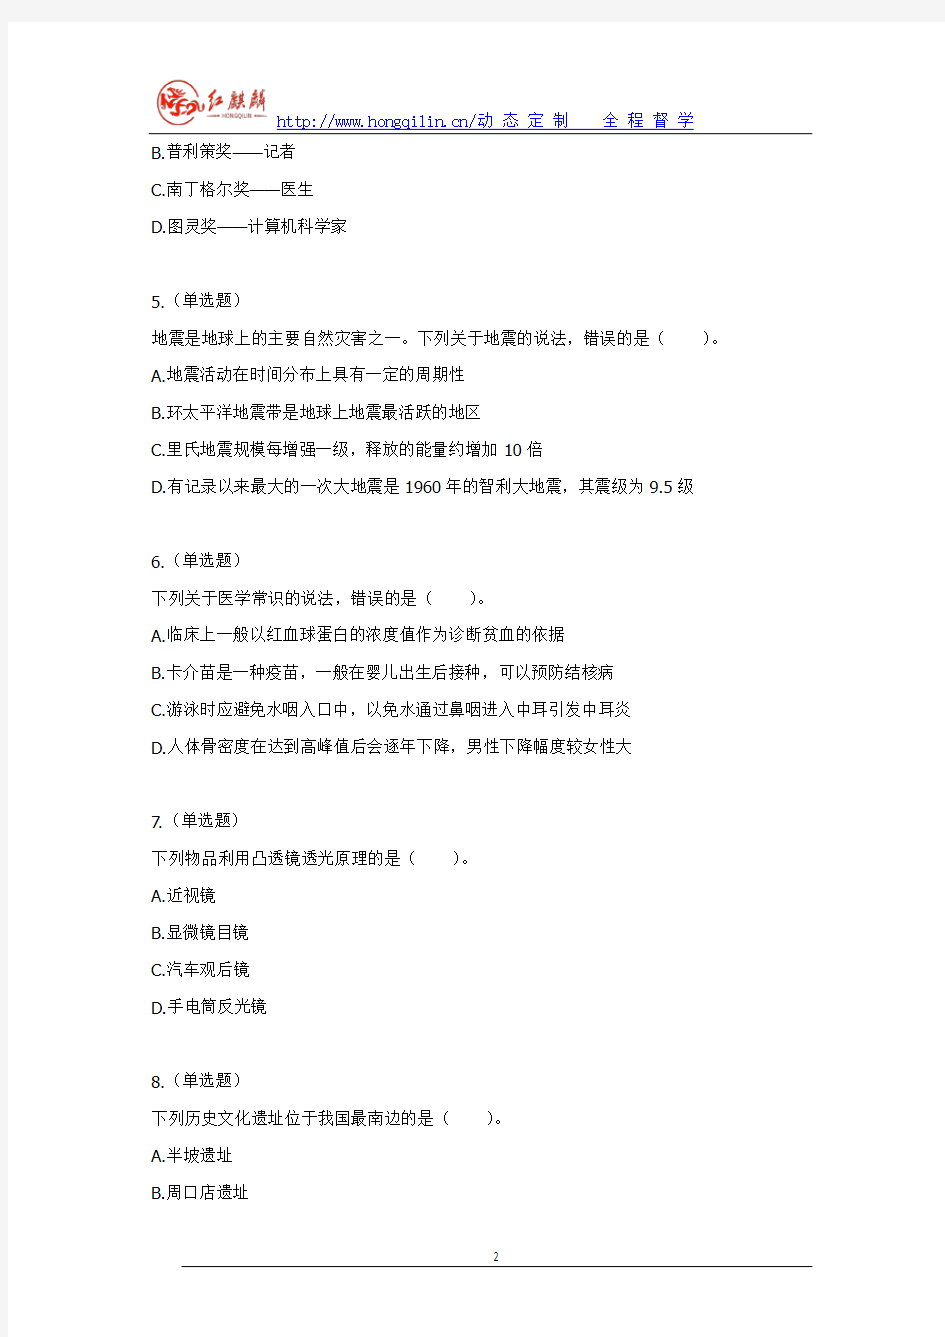 2013年海南省公务员考试行测真题答案及解析(完美打印版)